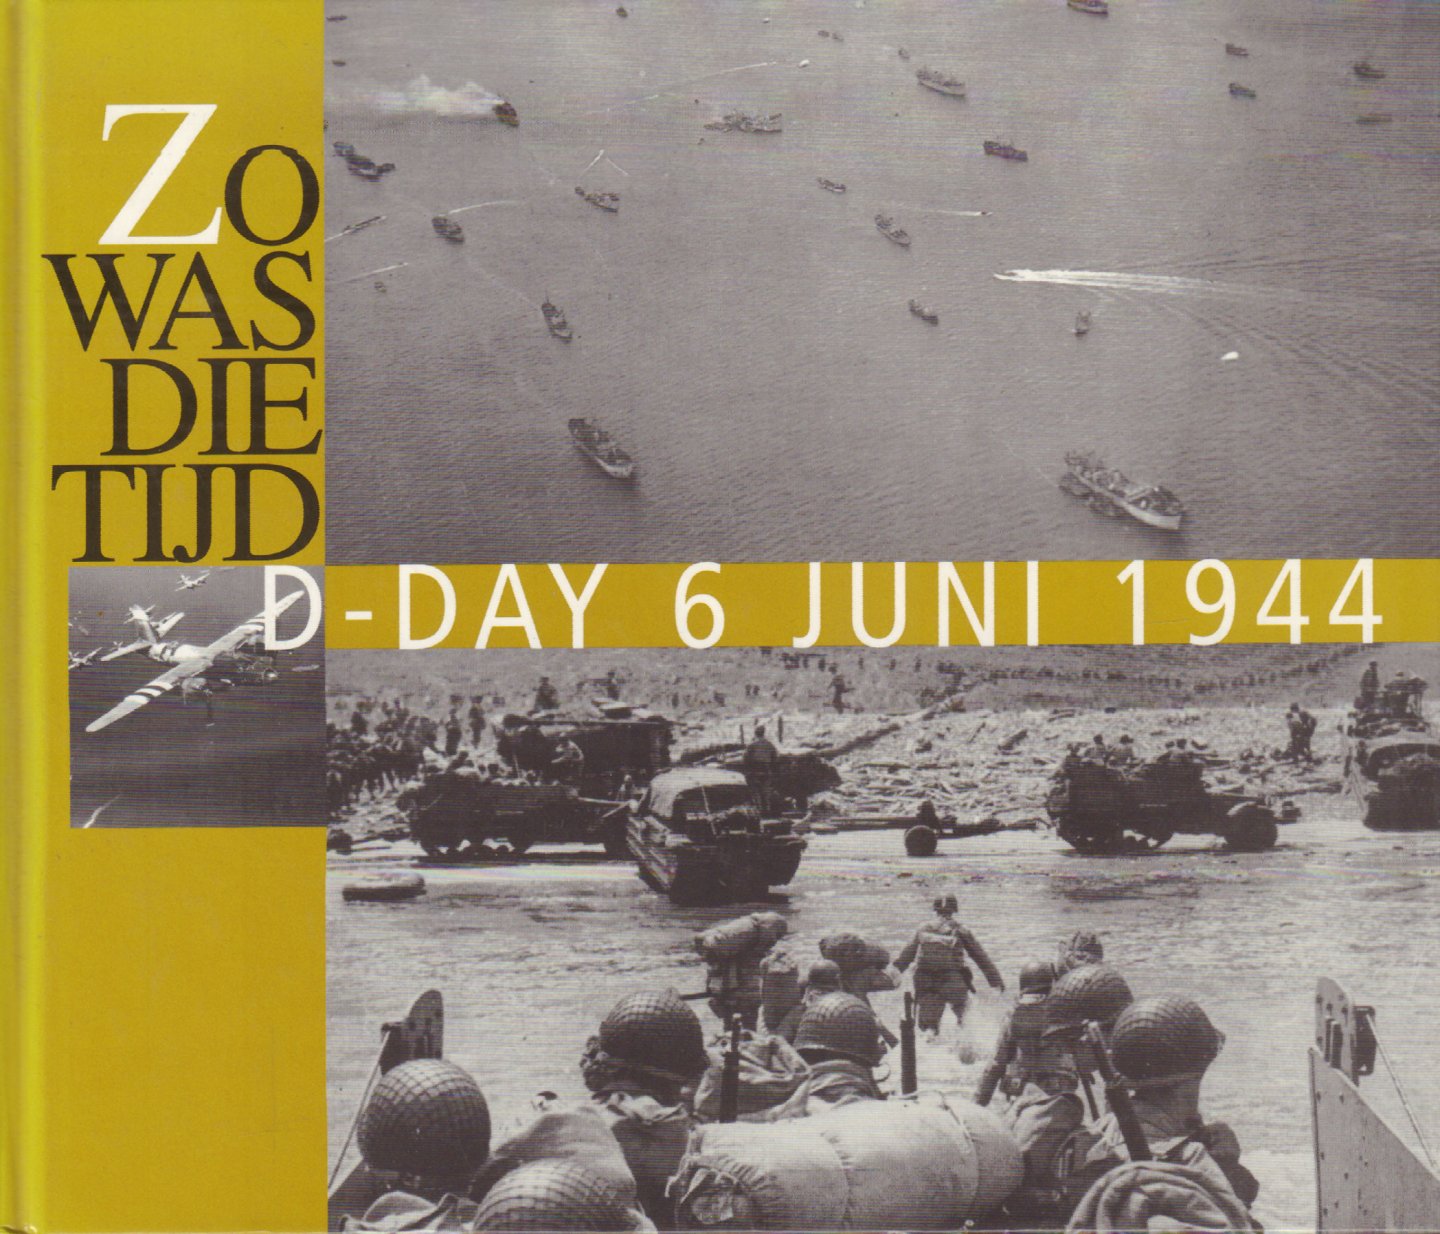 Spaarnestad fotoarchief - Zo Was Die Tijd, D-Day 6 juni 1944 (Historische foto's uit het Spaarnestad fotoarchief te Haarlem), 79 pag. kleine hardcover, gave staat